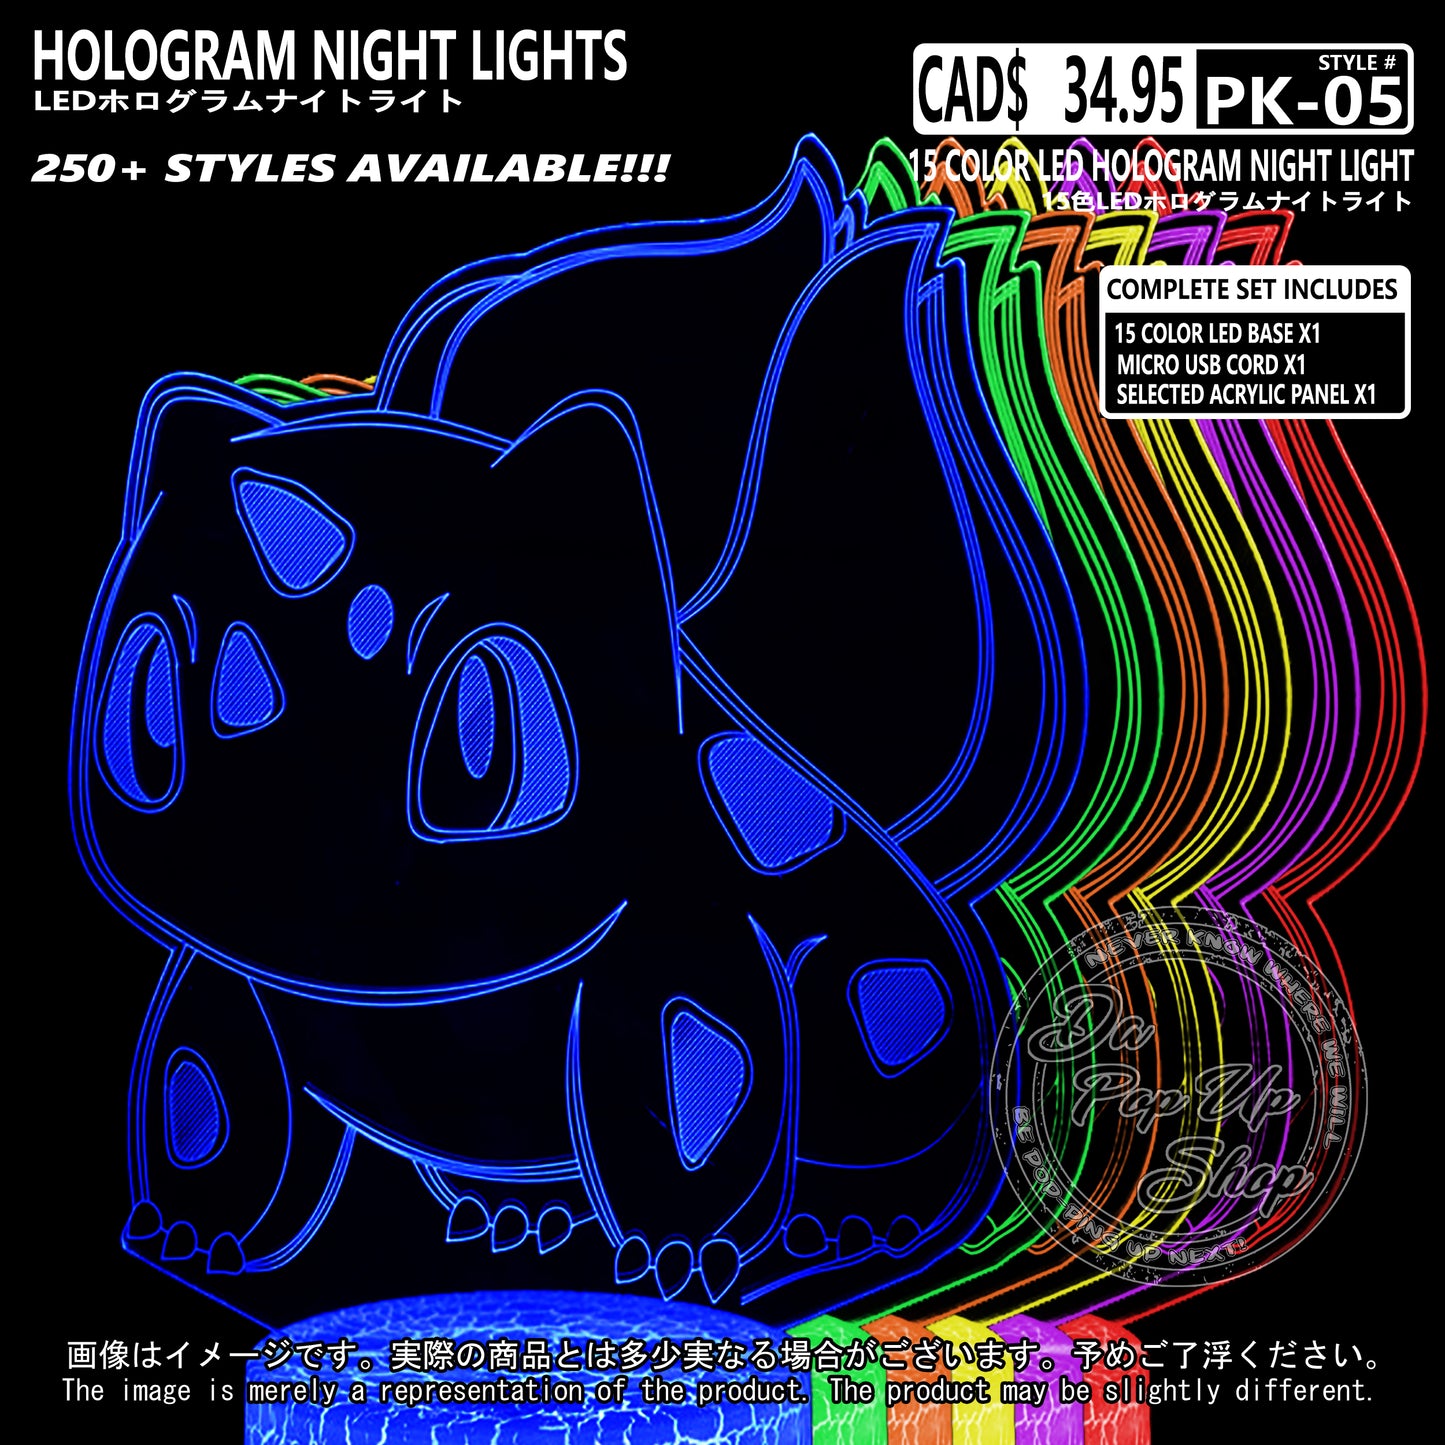 (PKM-05) BULBASAUER Pokemon Hologram LED Night Light